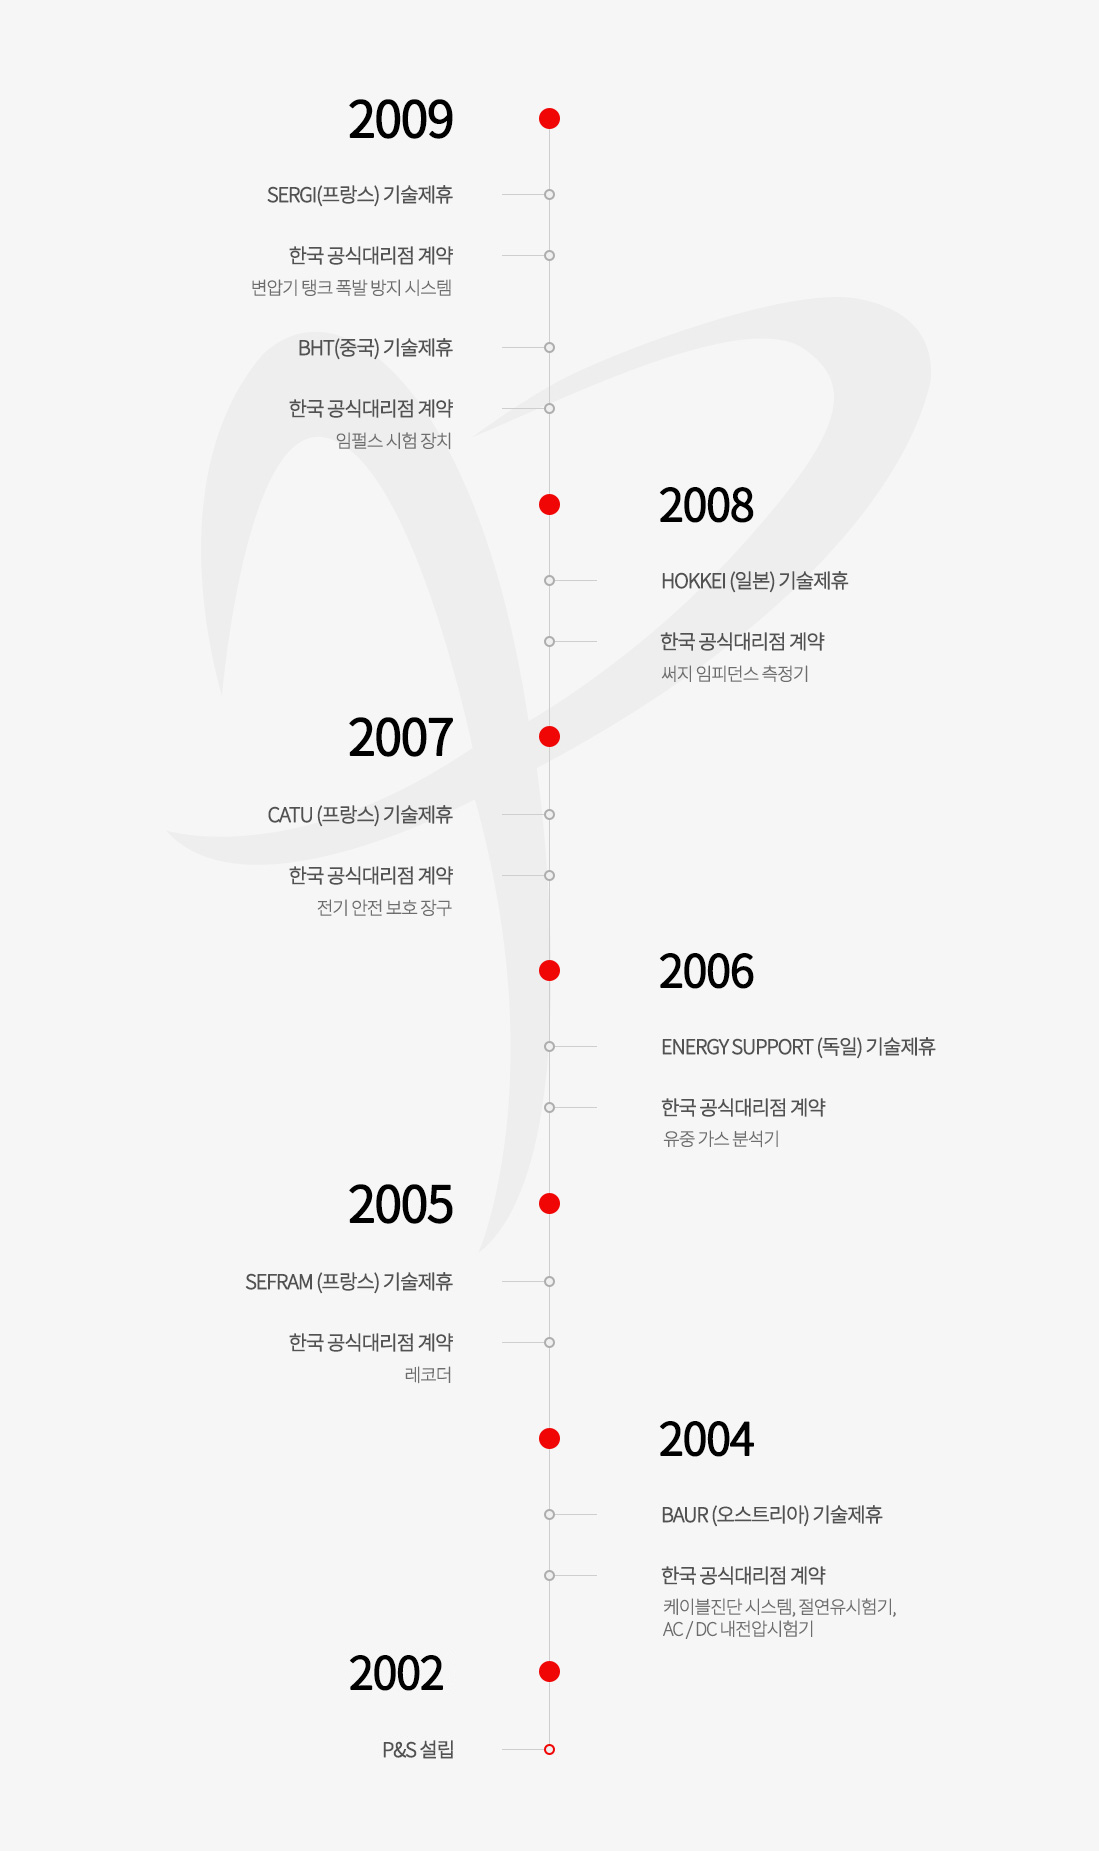 2002년부터 2009년까지 파워엔솔루션의 연혁